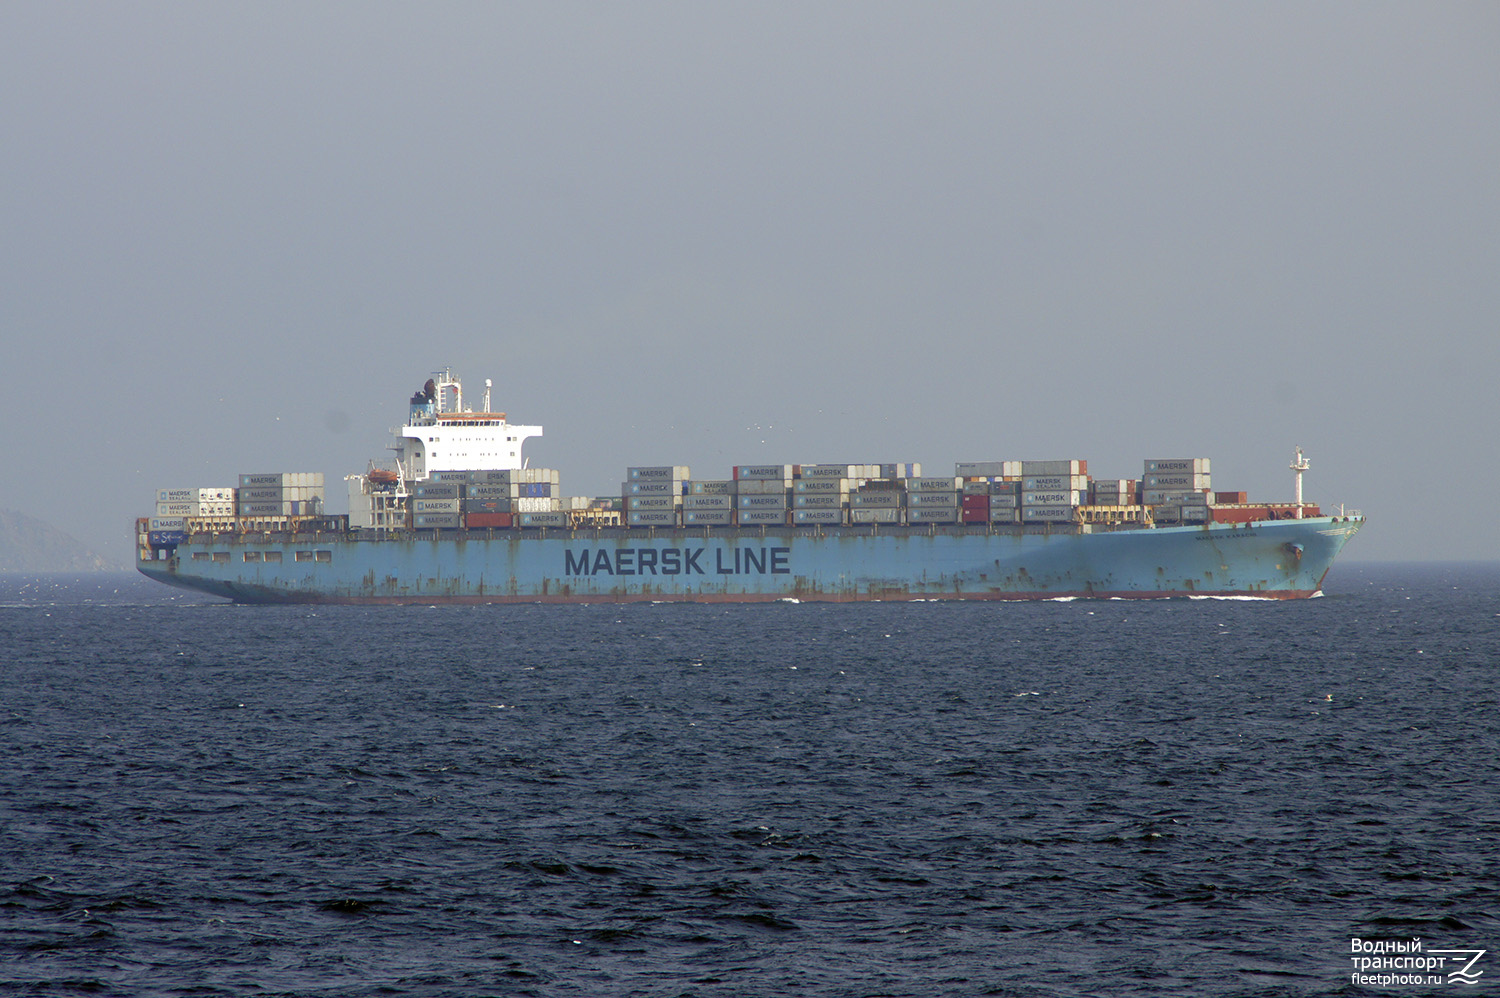 Maersk Karachi